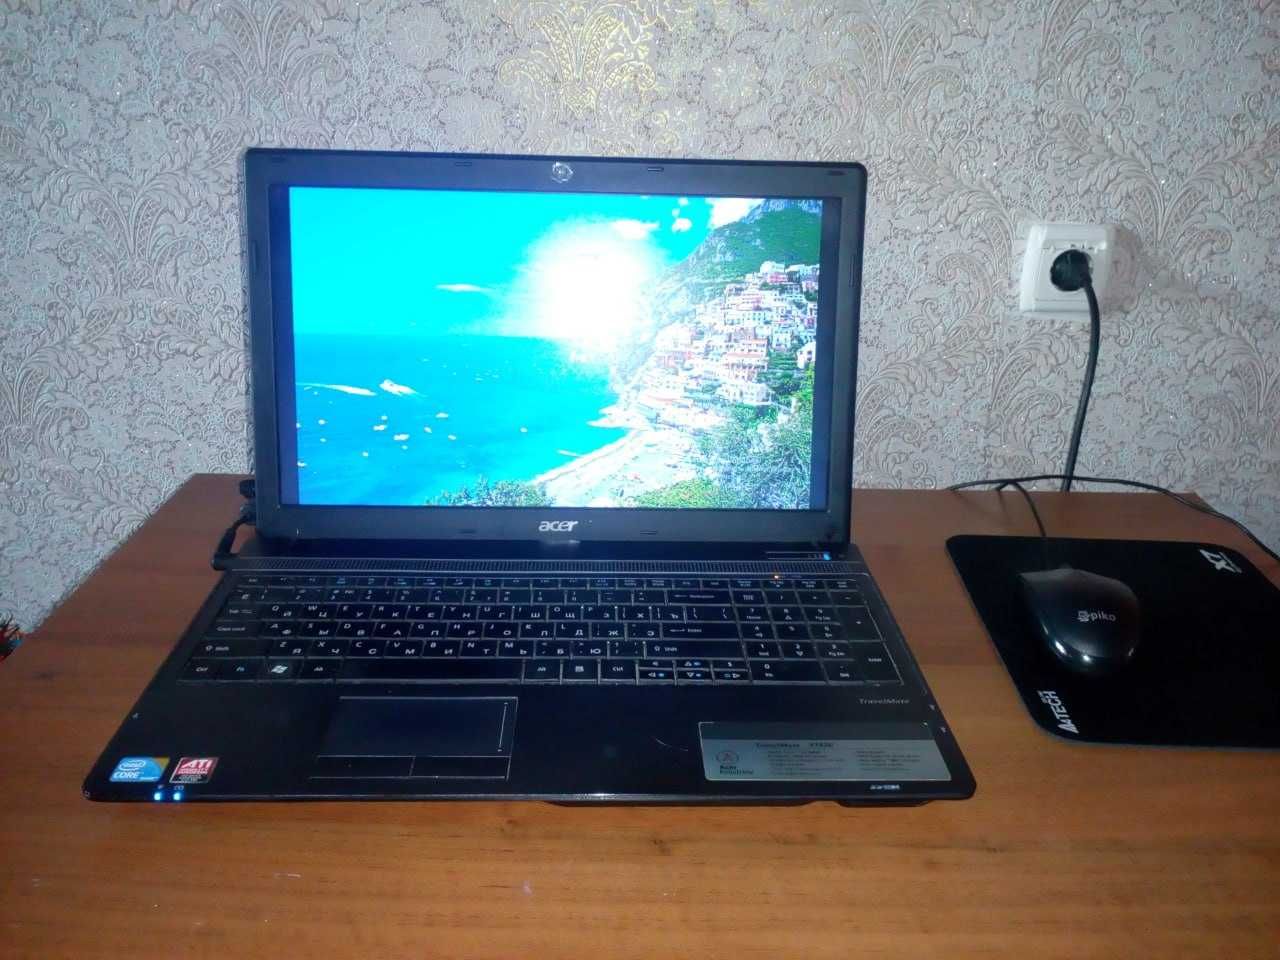 Ноутбук Acer Aspire 15.6" 5742G (i3 380M, DDR3 4Gb, 320Gb HDD) робочий